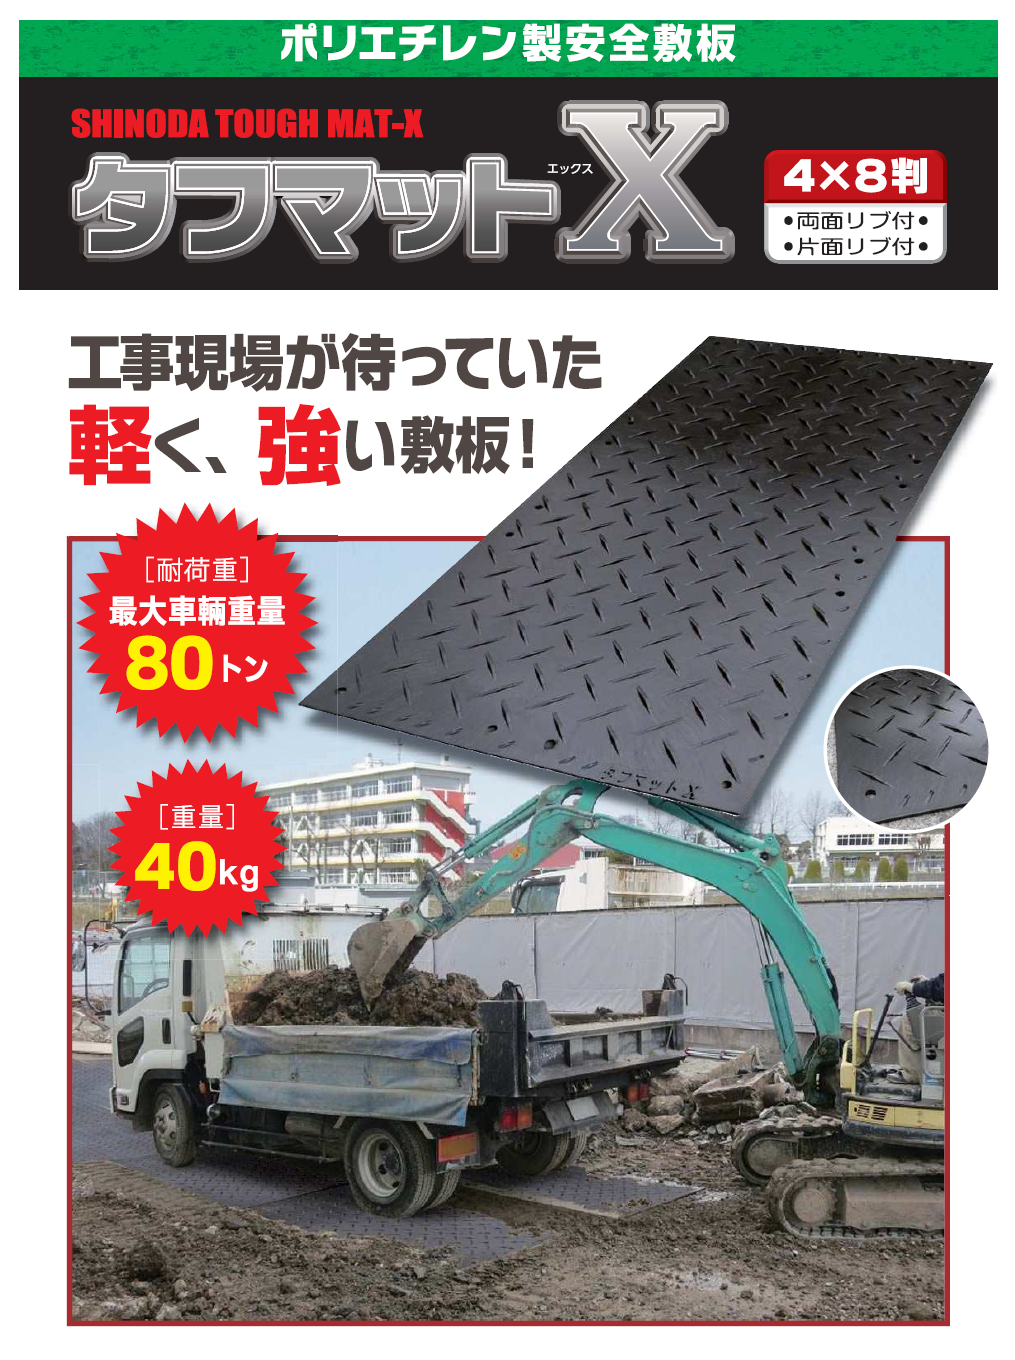 【新着商品】ポリエチレン製安全敷板『タフマットX』